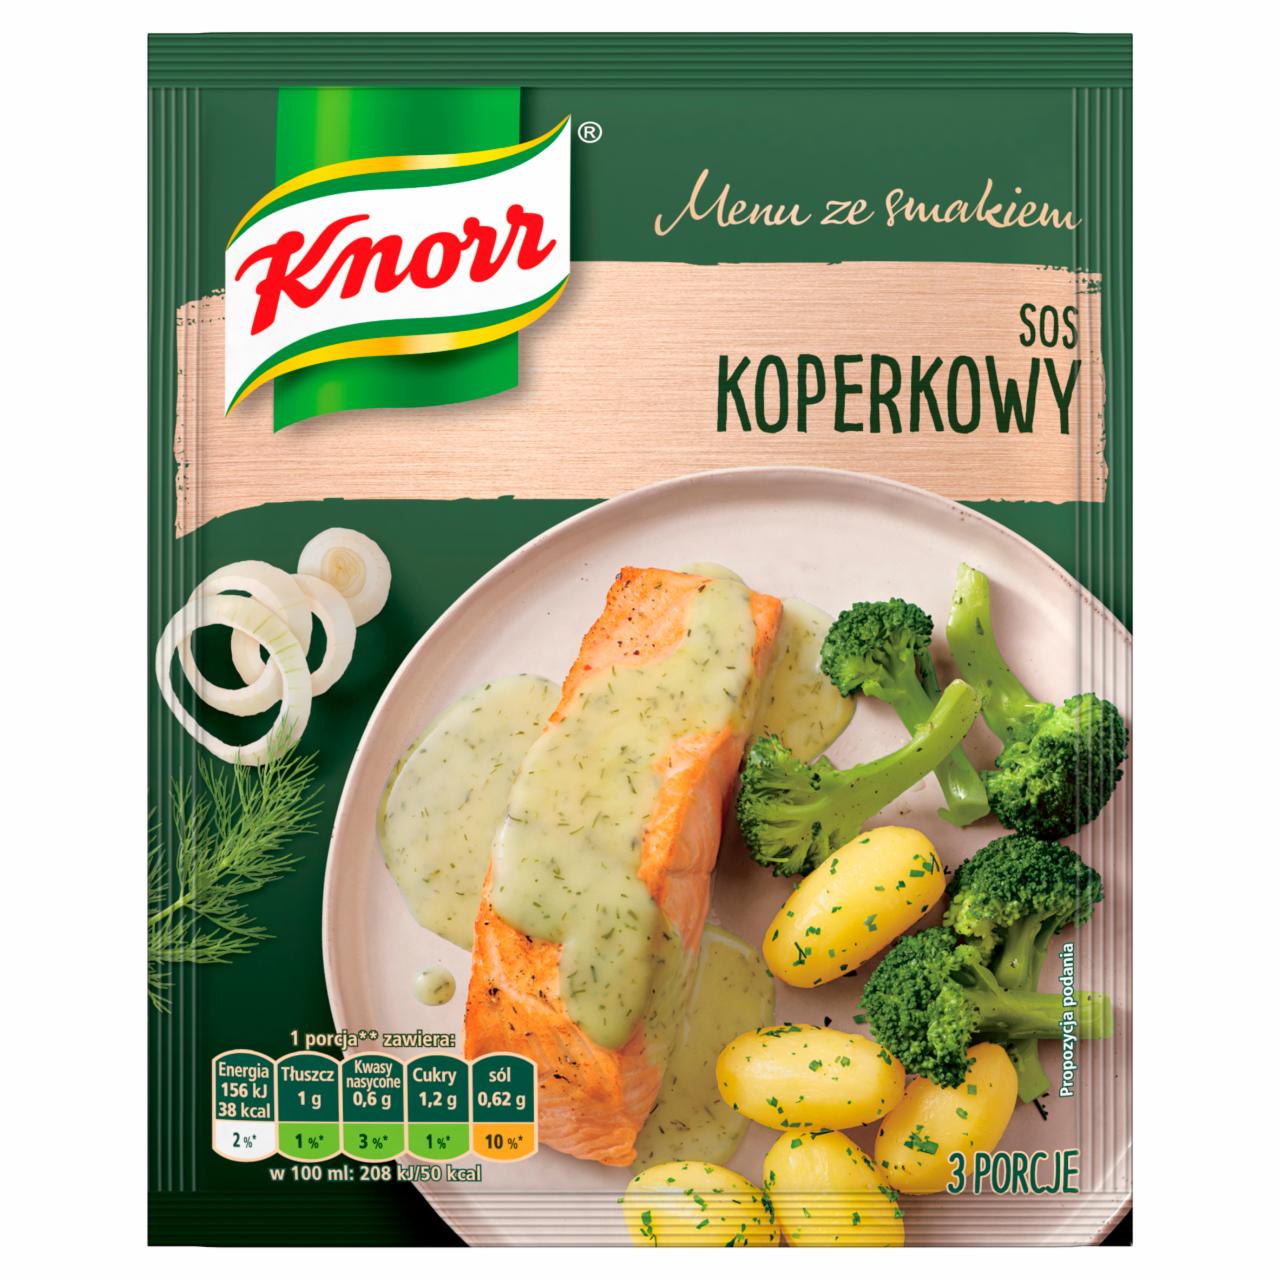 Zdjęcia - Knorr Menu ze smakiem Sos koperkowy 31 g